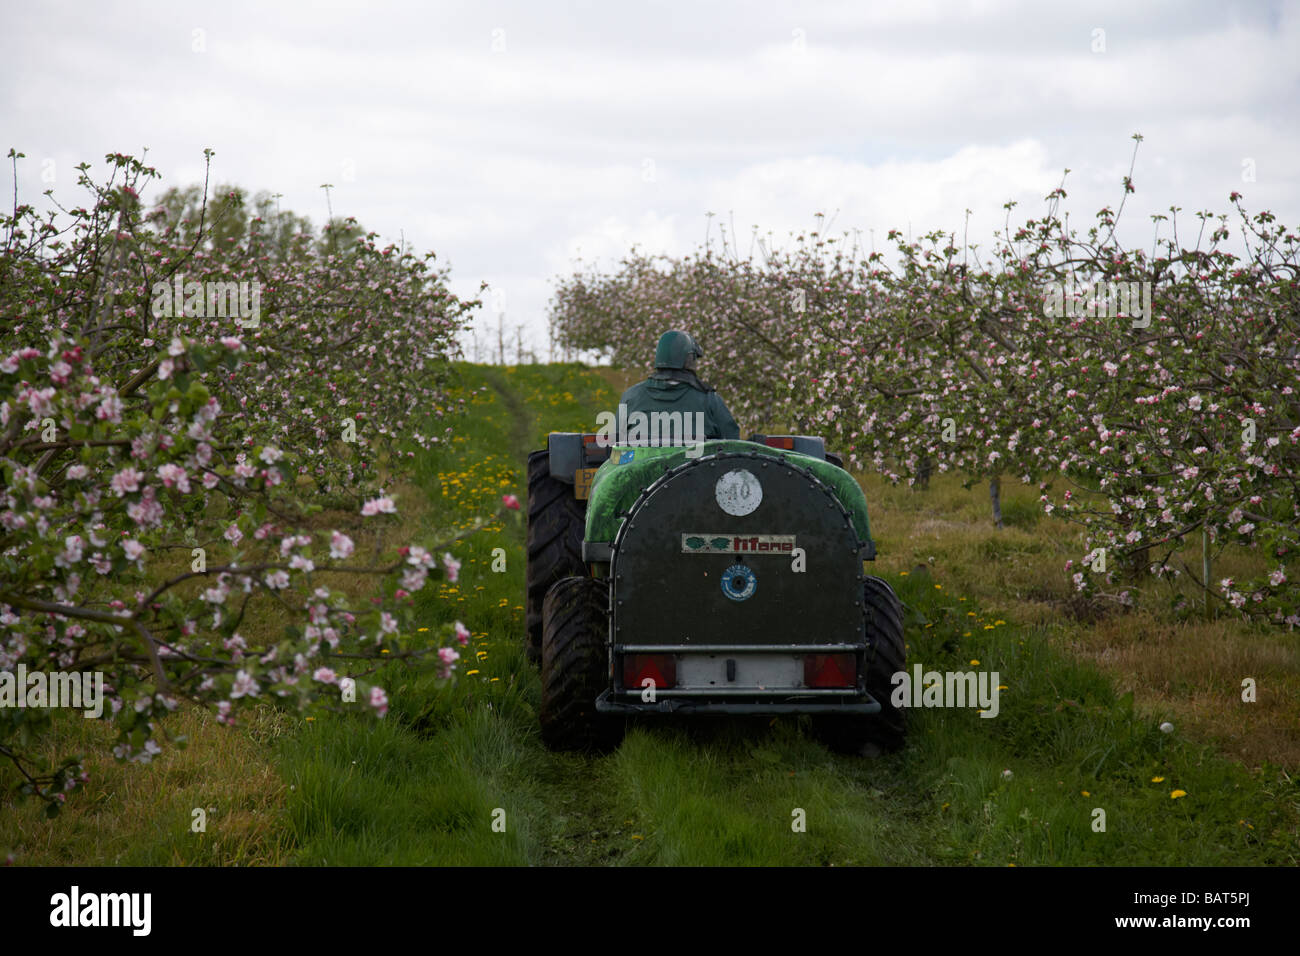 Landwirt Spritzen Apfelbäume mit Pestizid während Apfelblüten in Bramley  Apfelplantage in County Armagh Nordirland Vereinigtes Königreich  Stockfotografie - Alamy